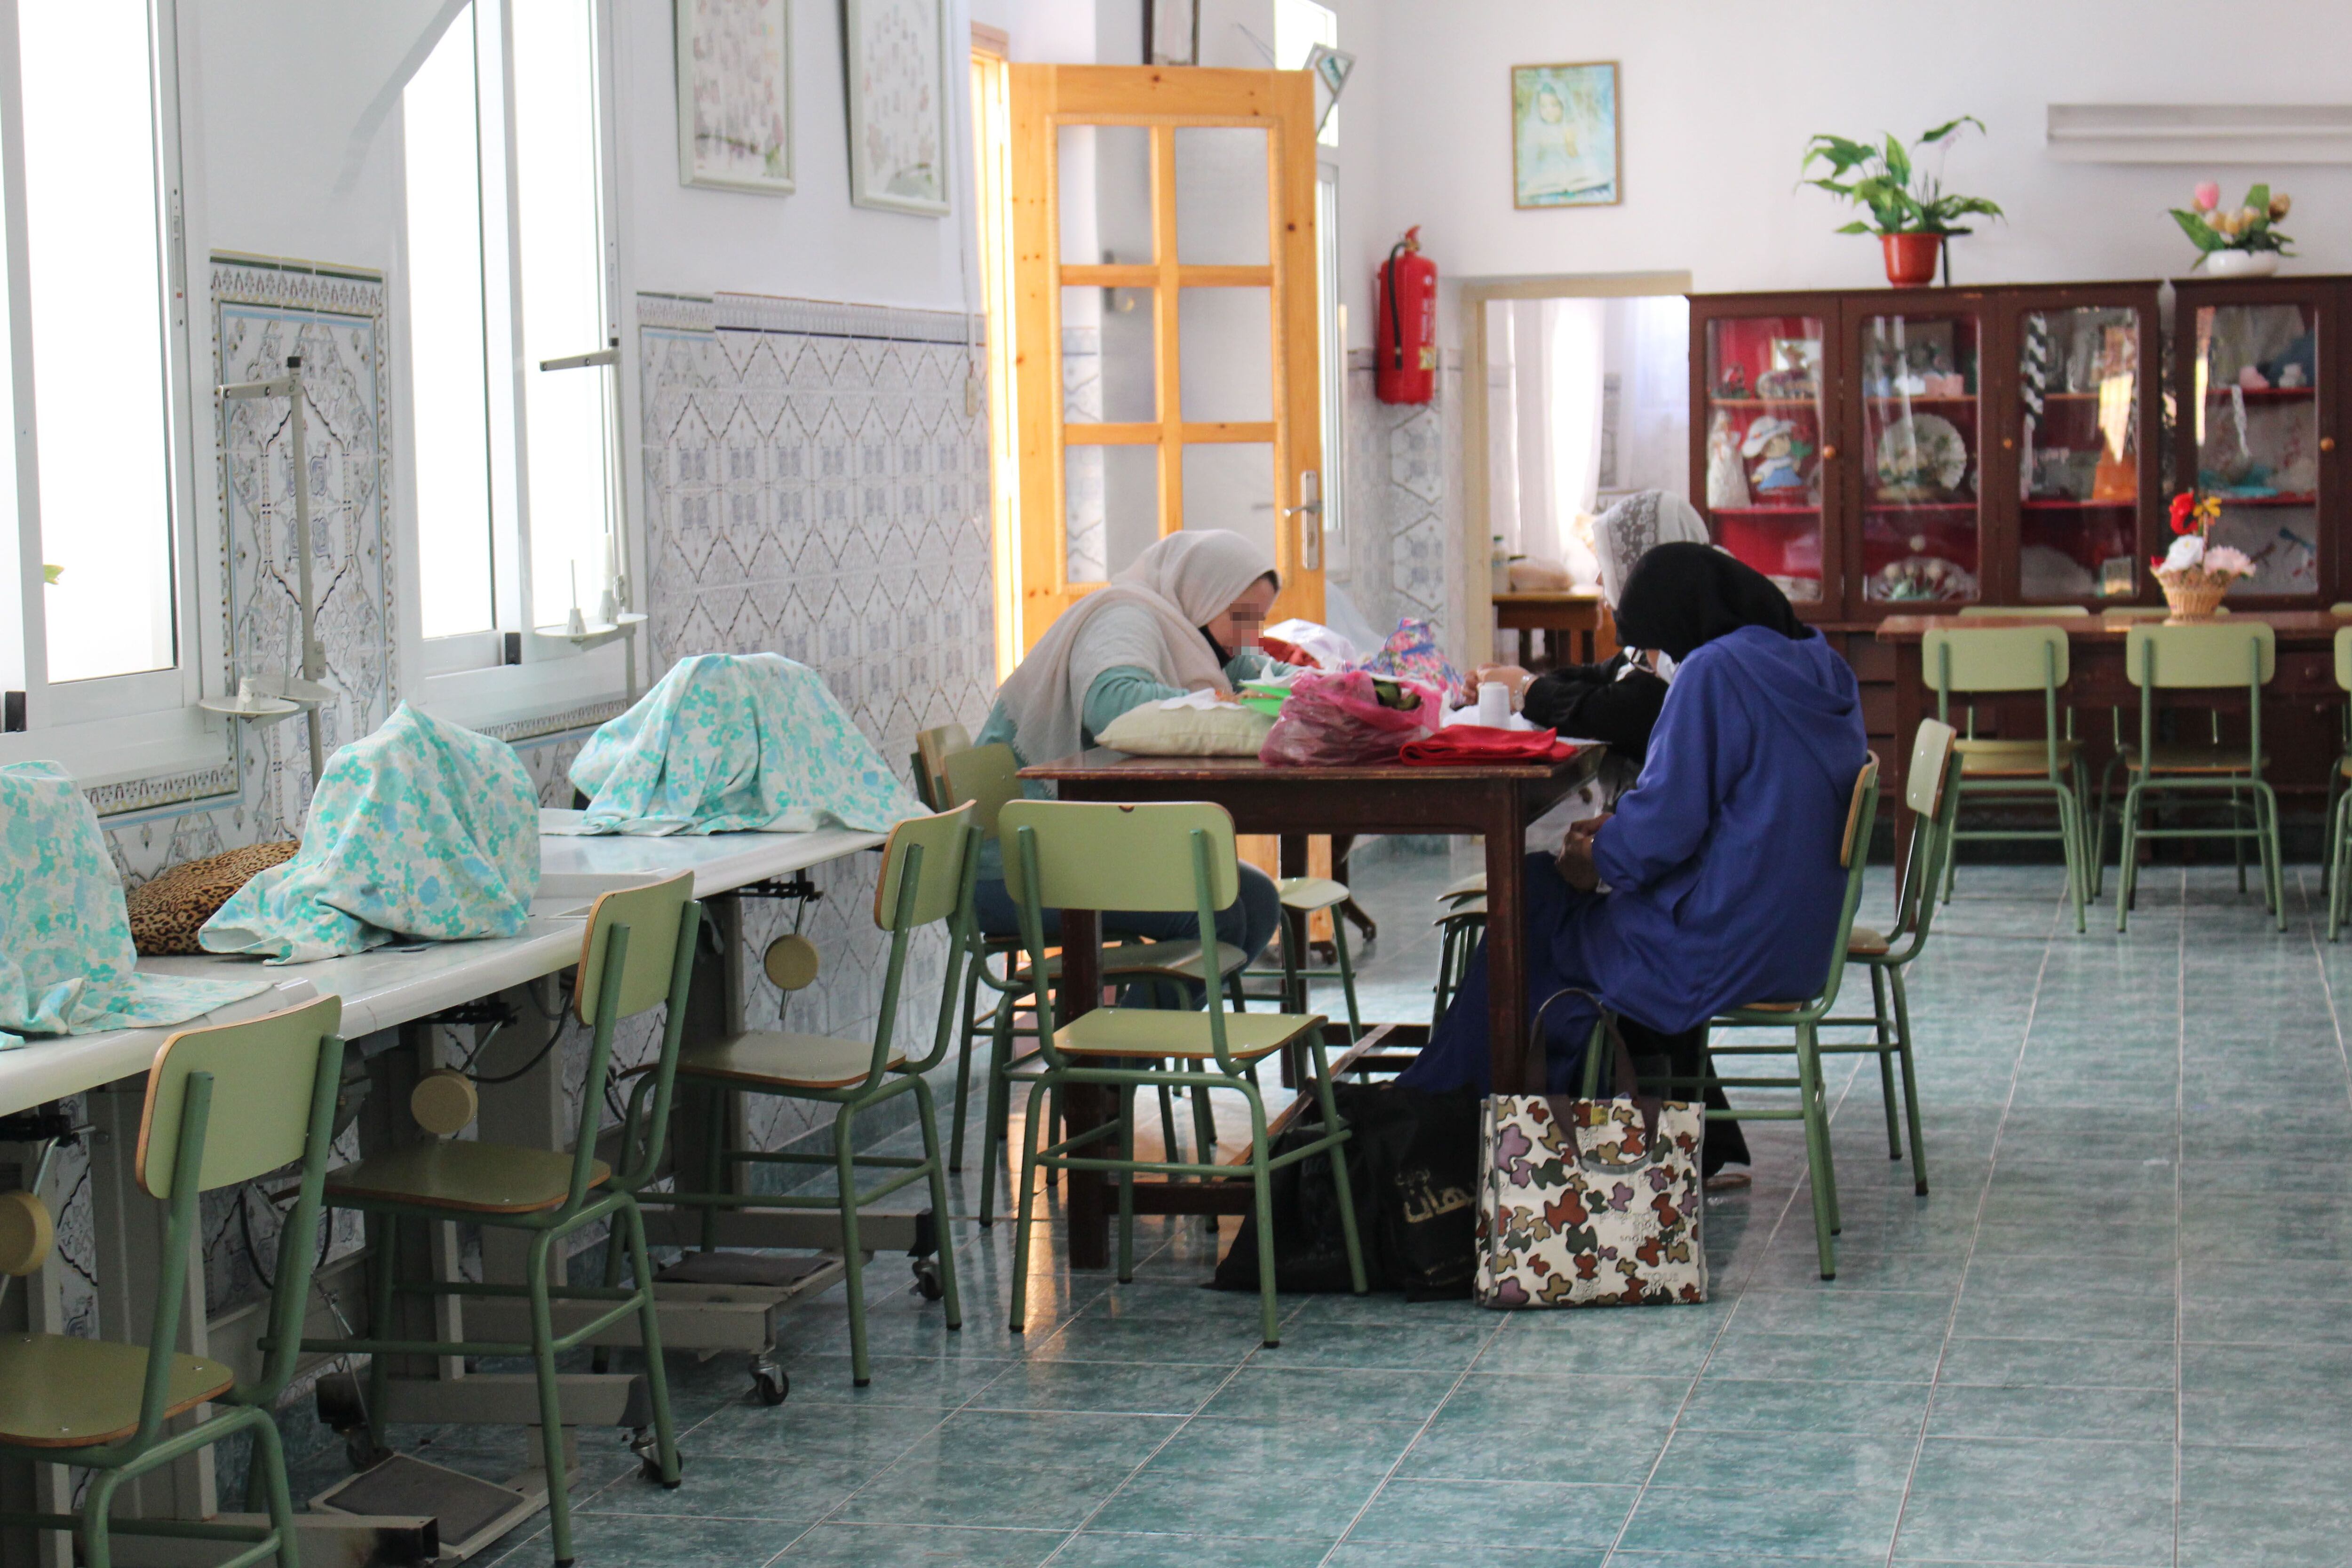 Las mujeres marroquíes comparten el taller desde la pandemia con otras procedentes de África subsahariana.